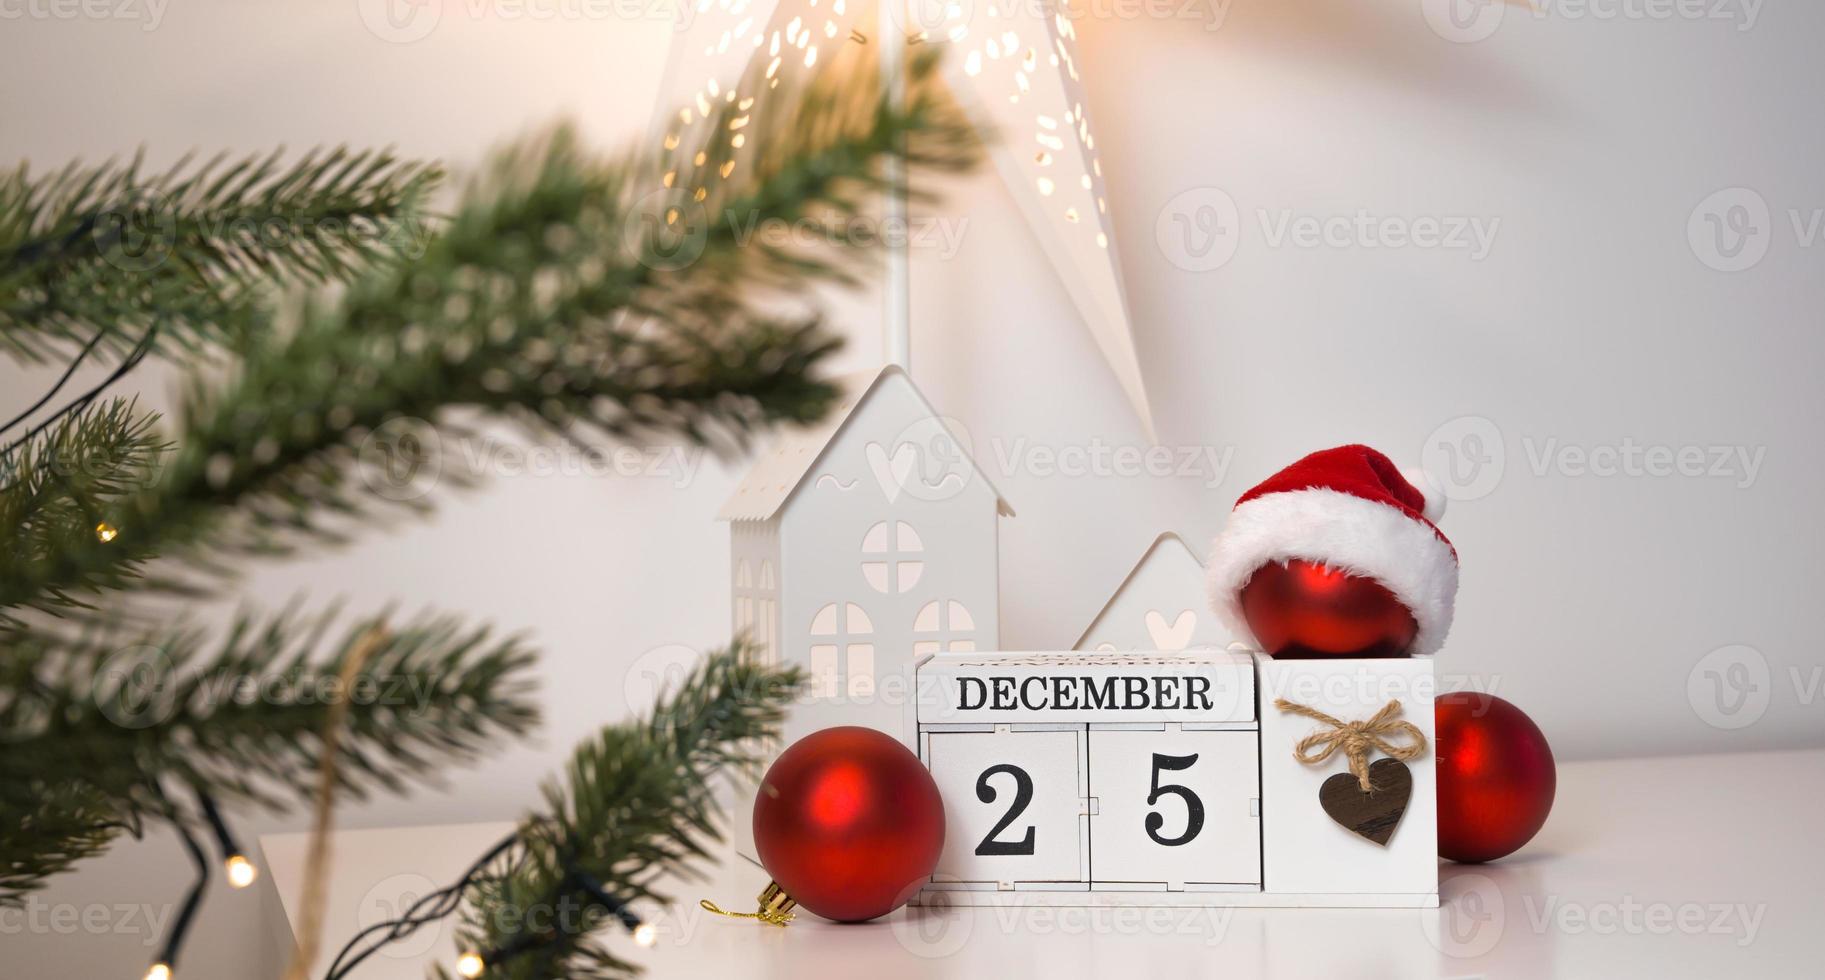 vinytage kalender med december 25 datum nära jul träd och några röd ornament foto